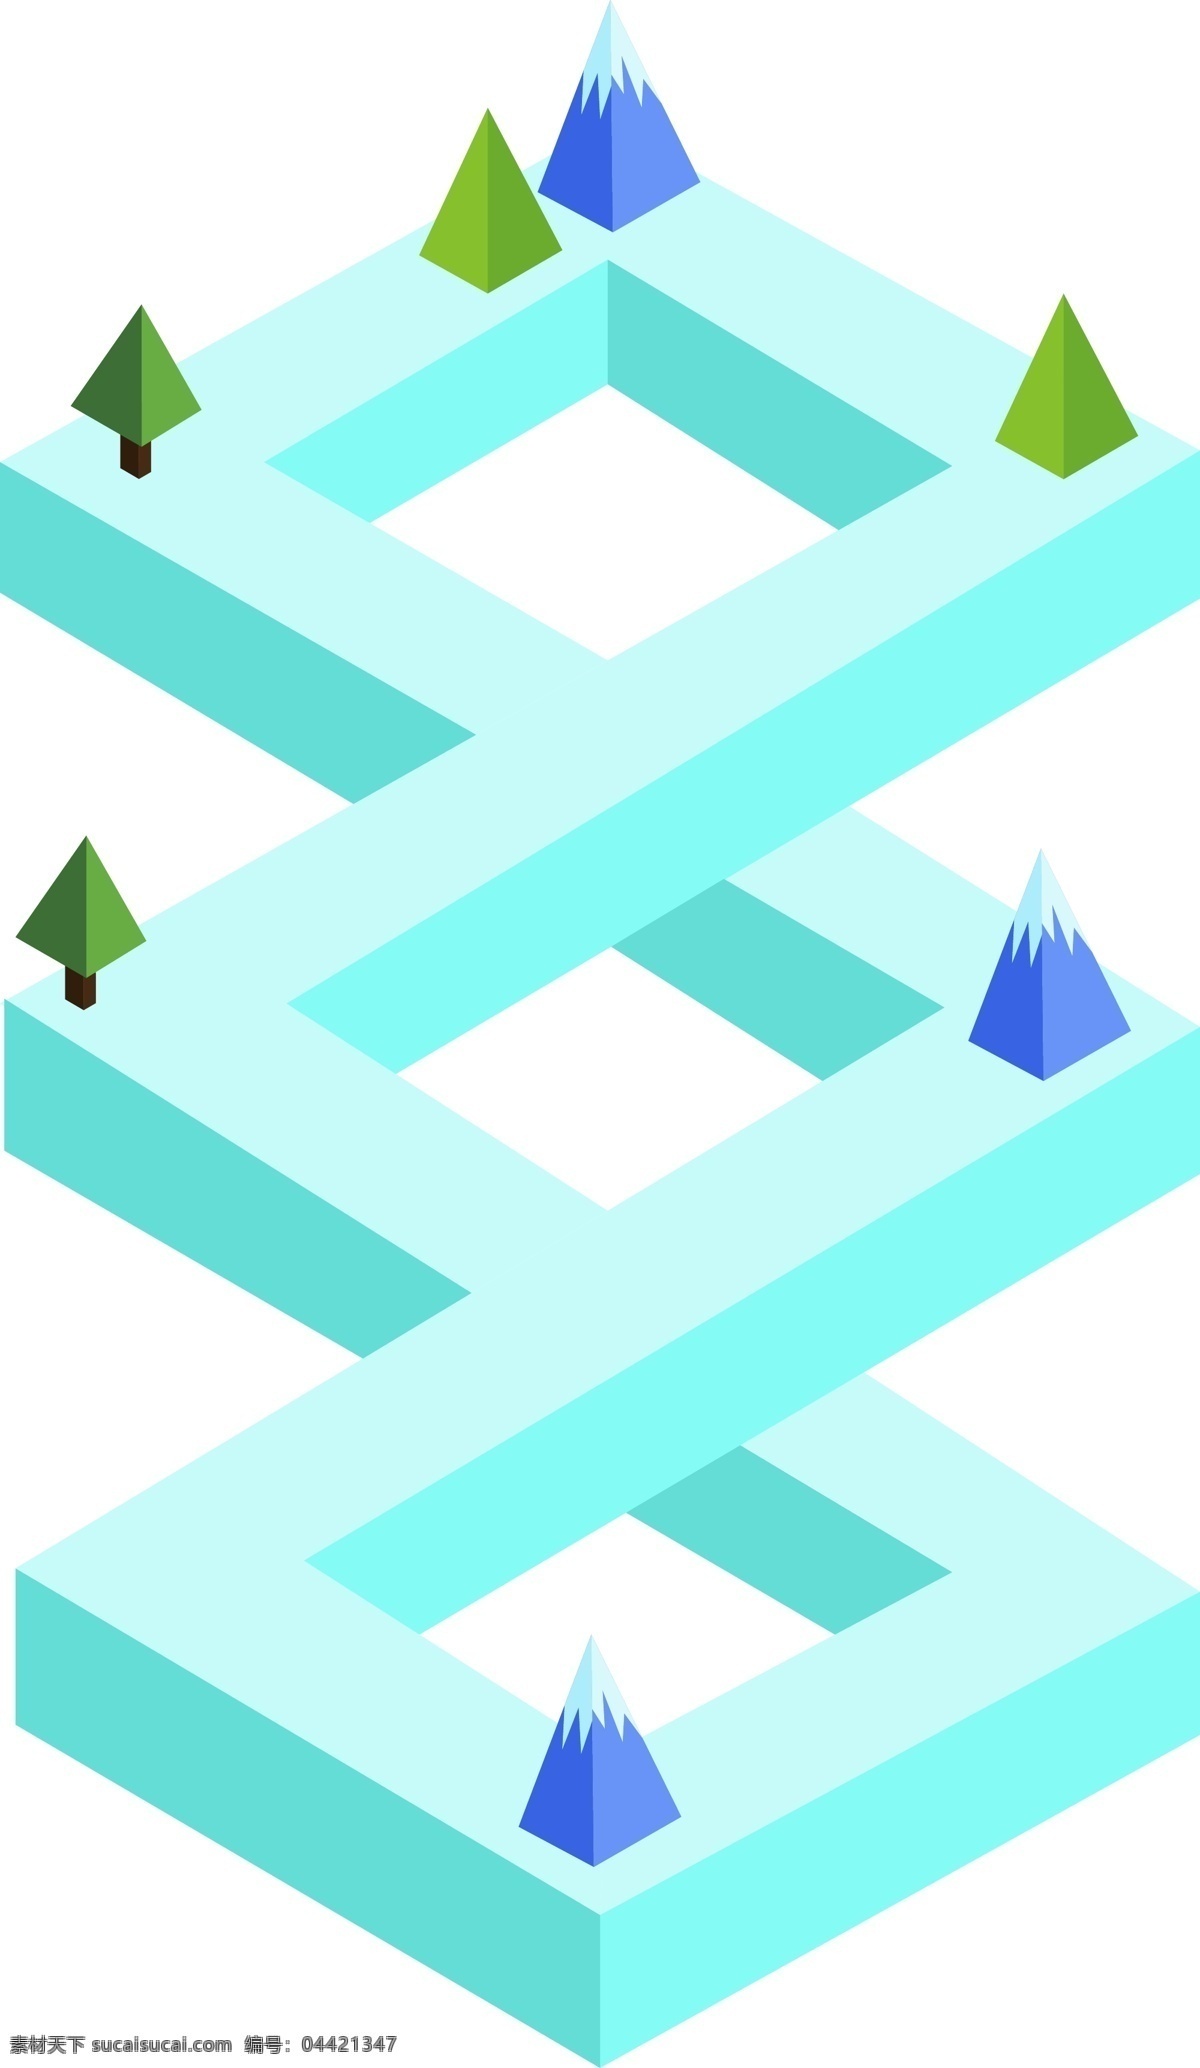 矢量 手绘 卡通 立体 形状 2.5d 正方形 树木 蓝色 紫色 绿色 褐色 地面 框架 结构 柱体 三角